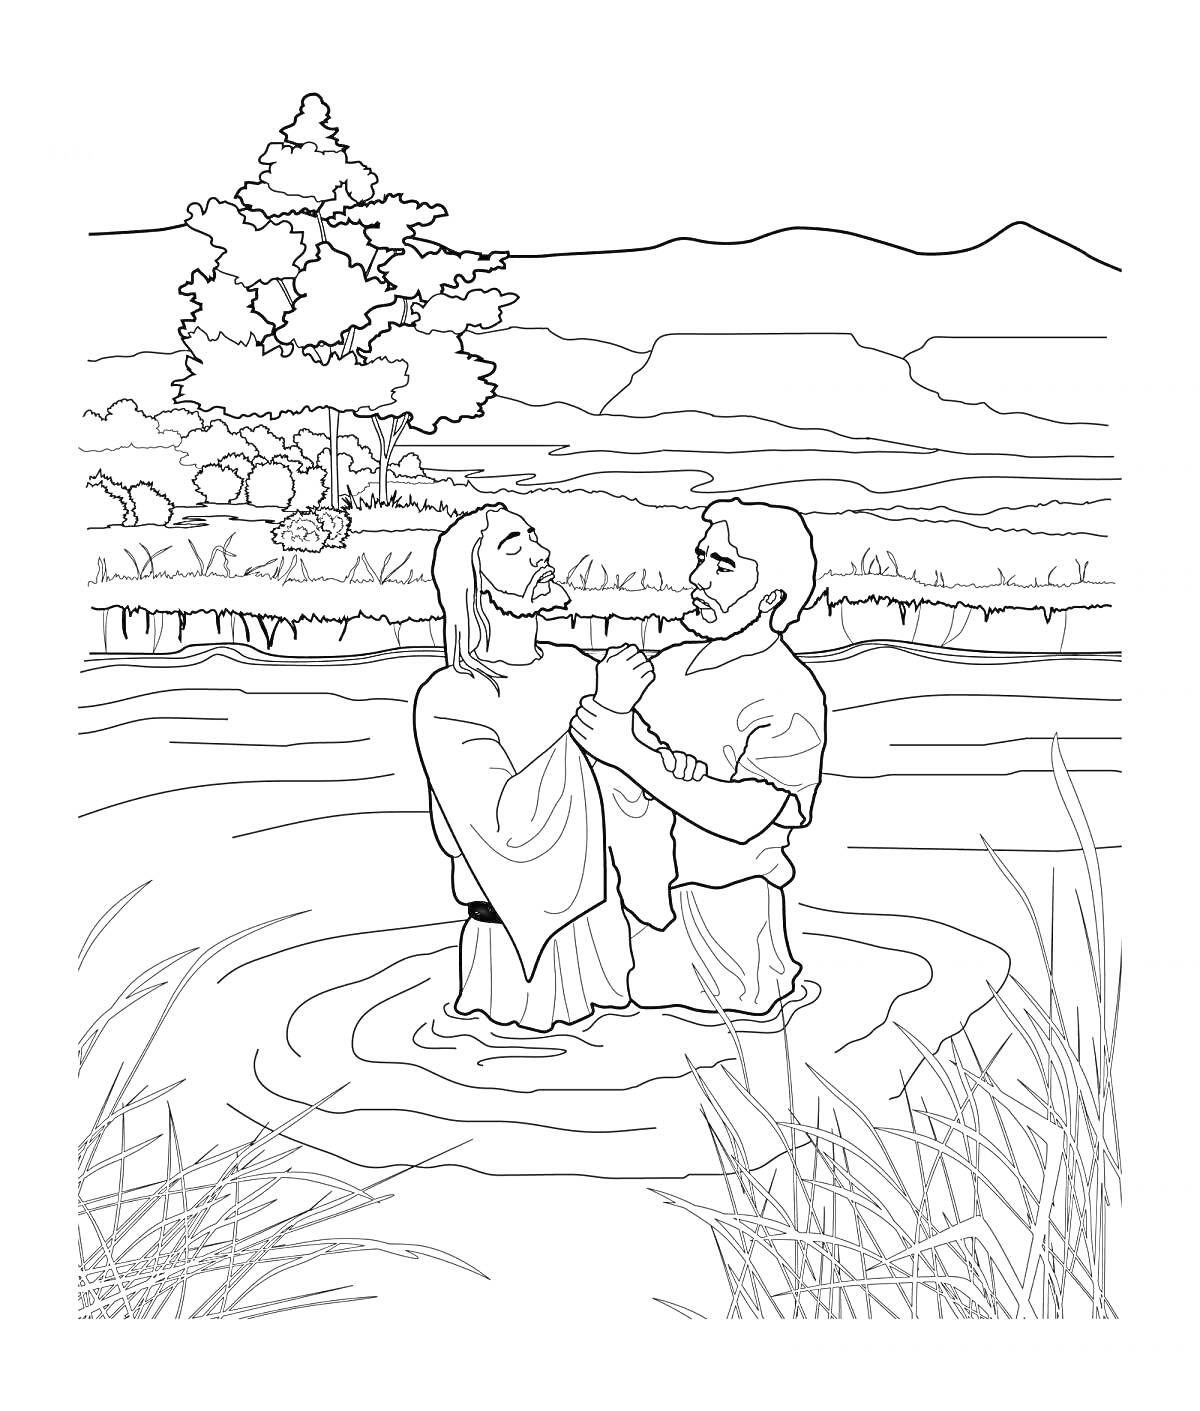 Раскраска Крещение Господне, двое взрослых мужчин стоят в воде, один крестит другого, берег, дерево, горы, кусты и трава вокруг